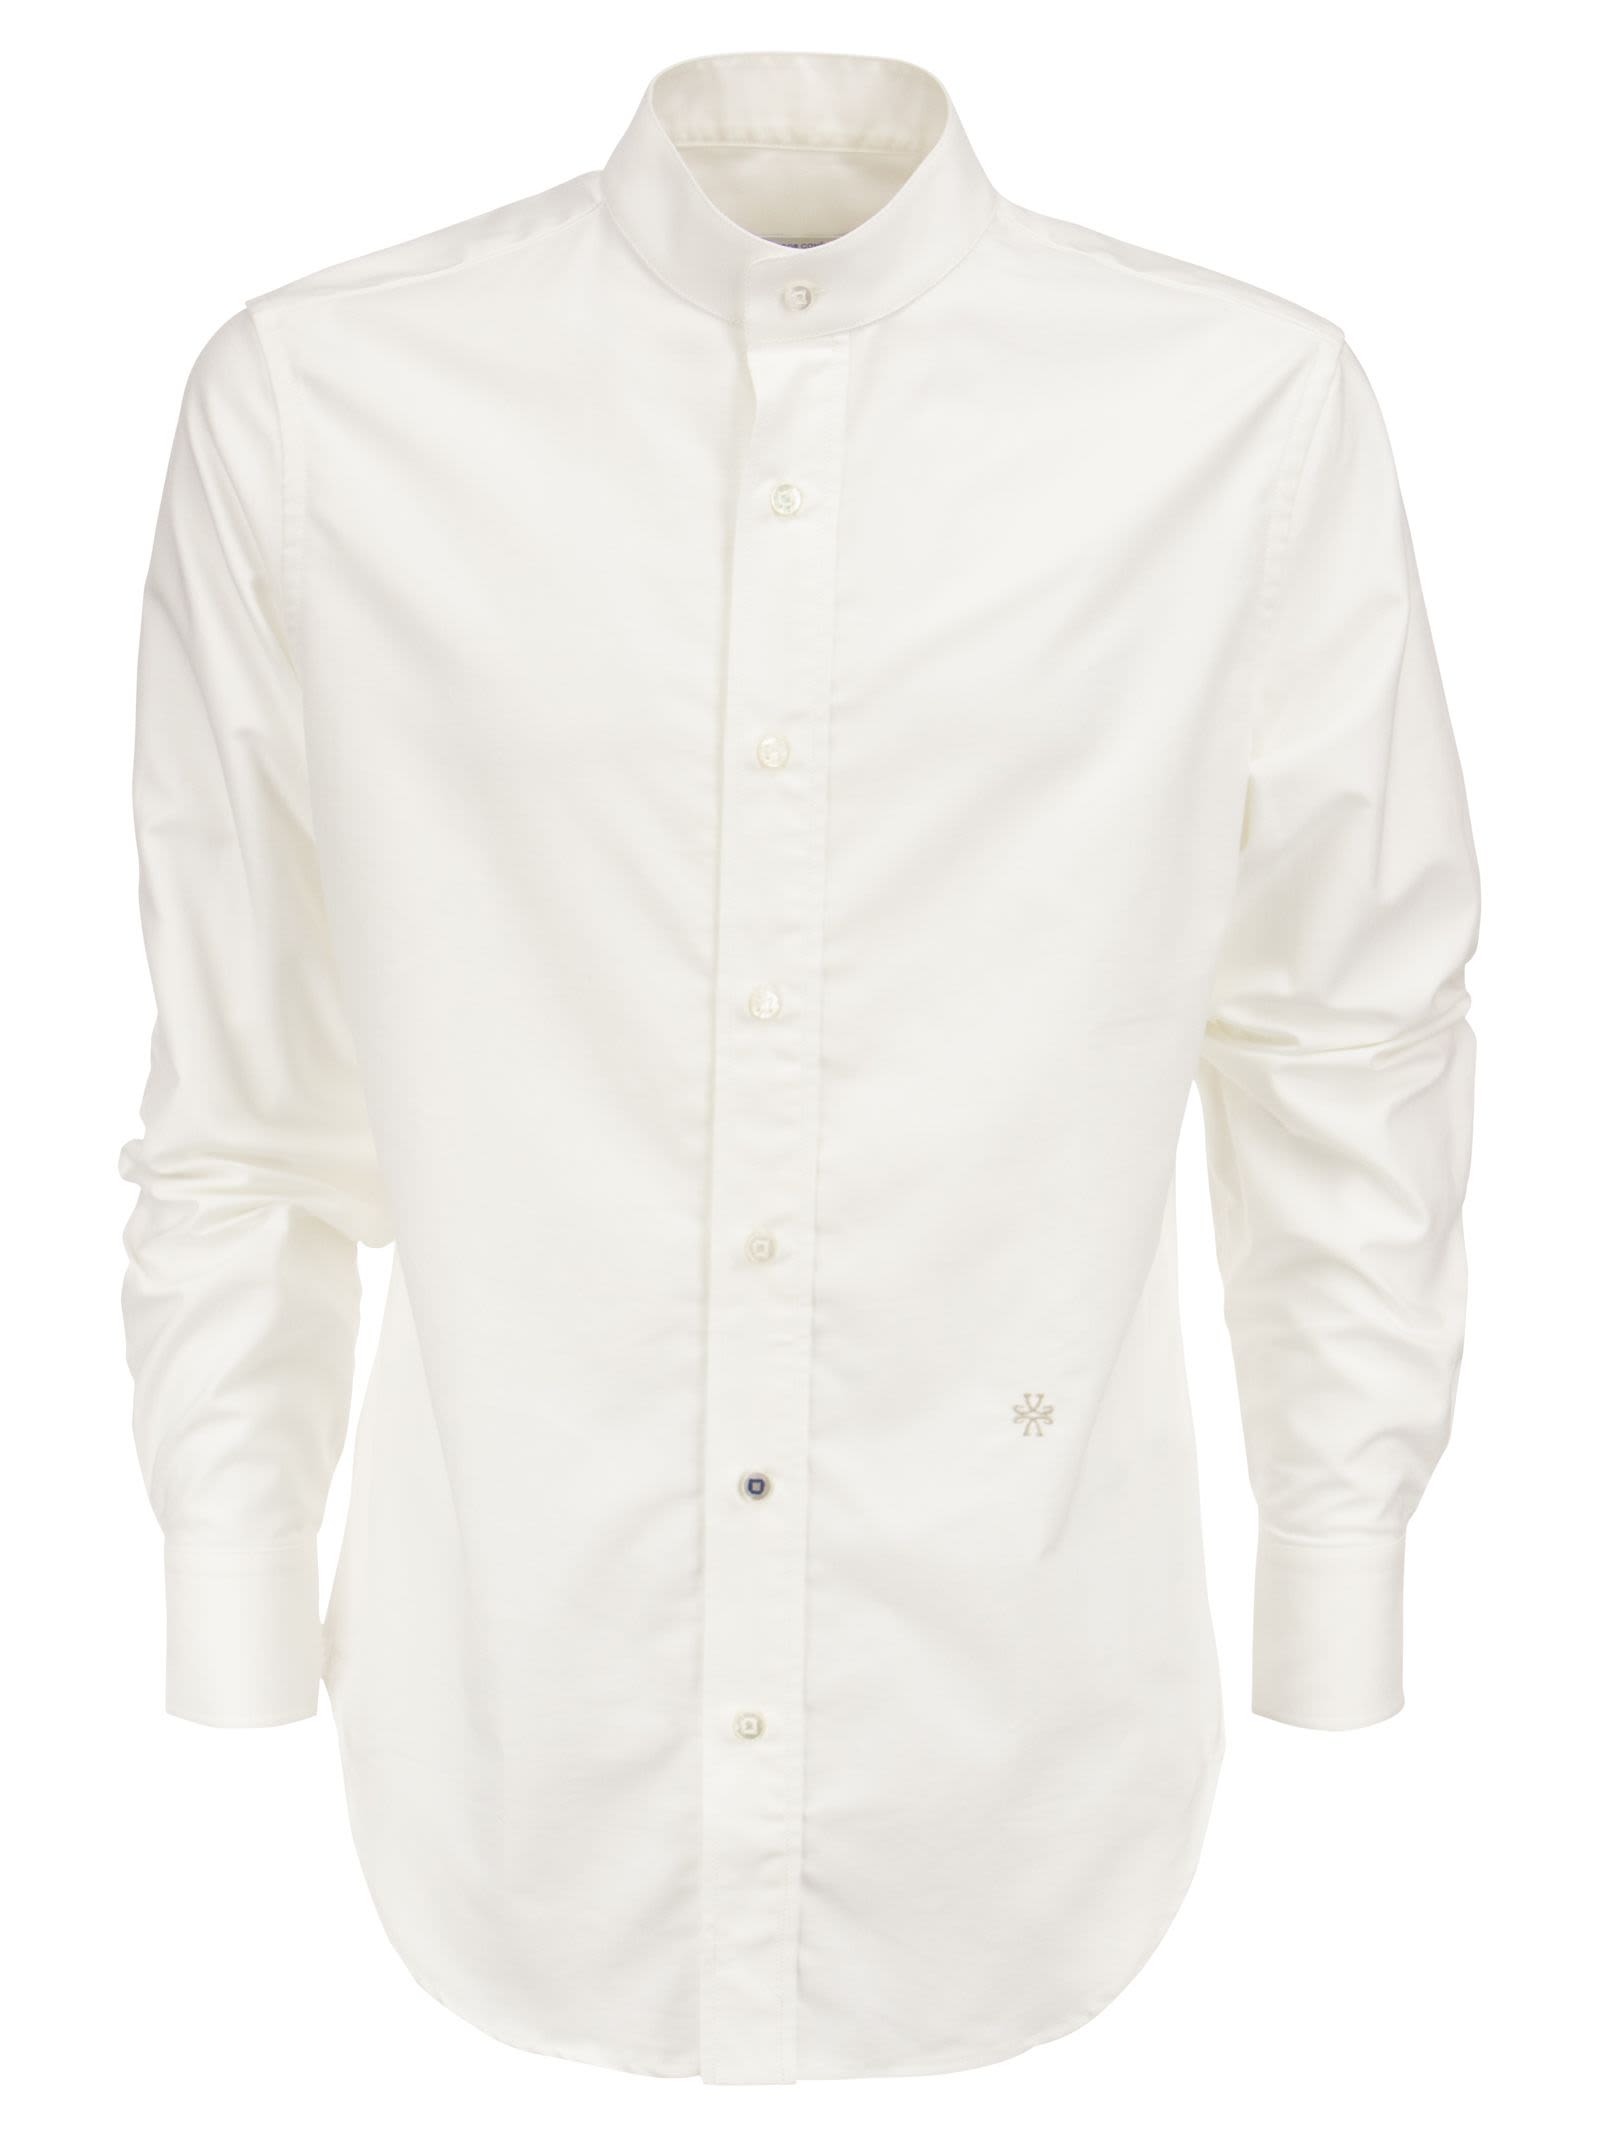 Jacob Cohen Shirt With Mandarin Collar